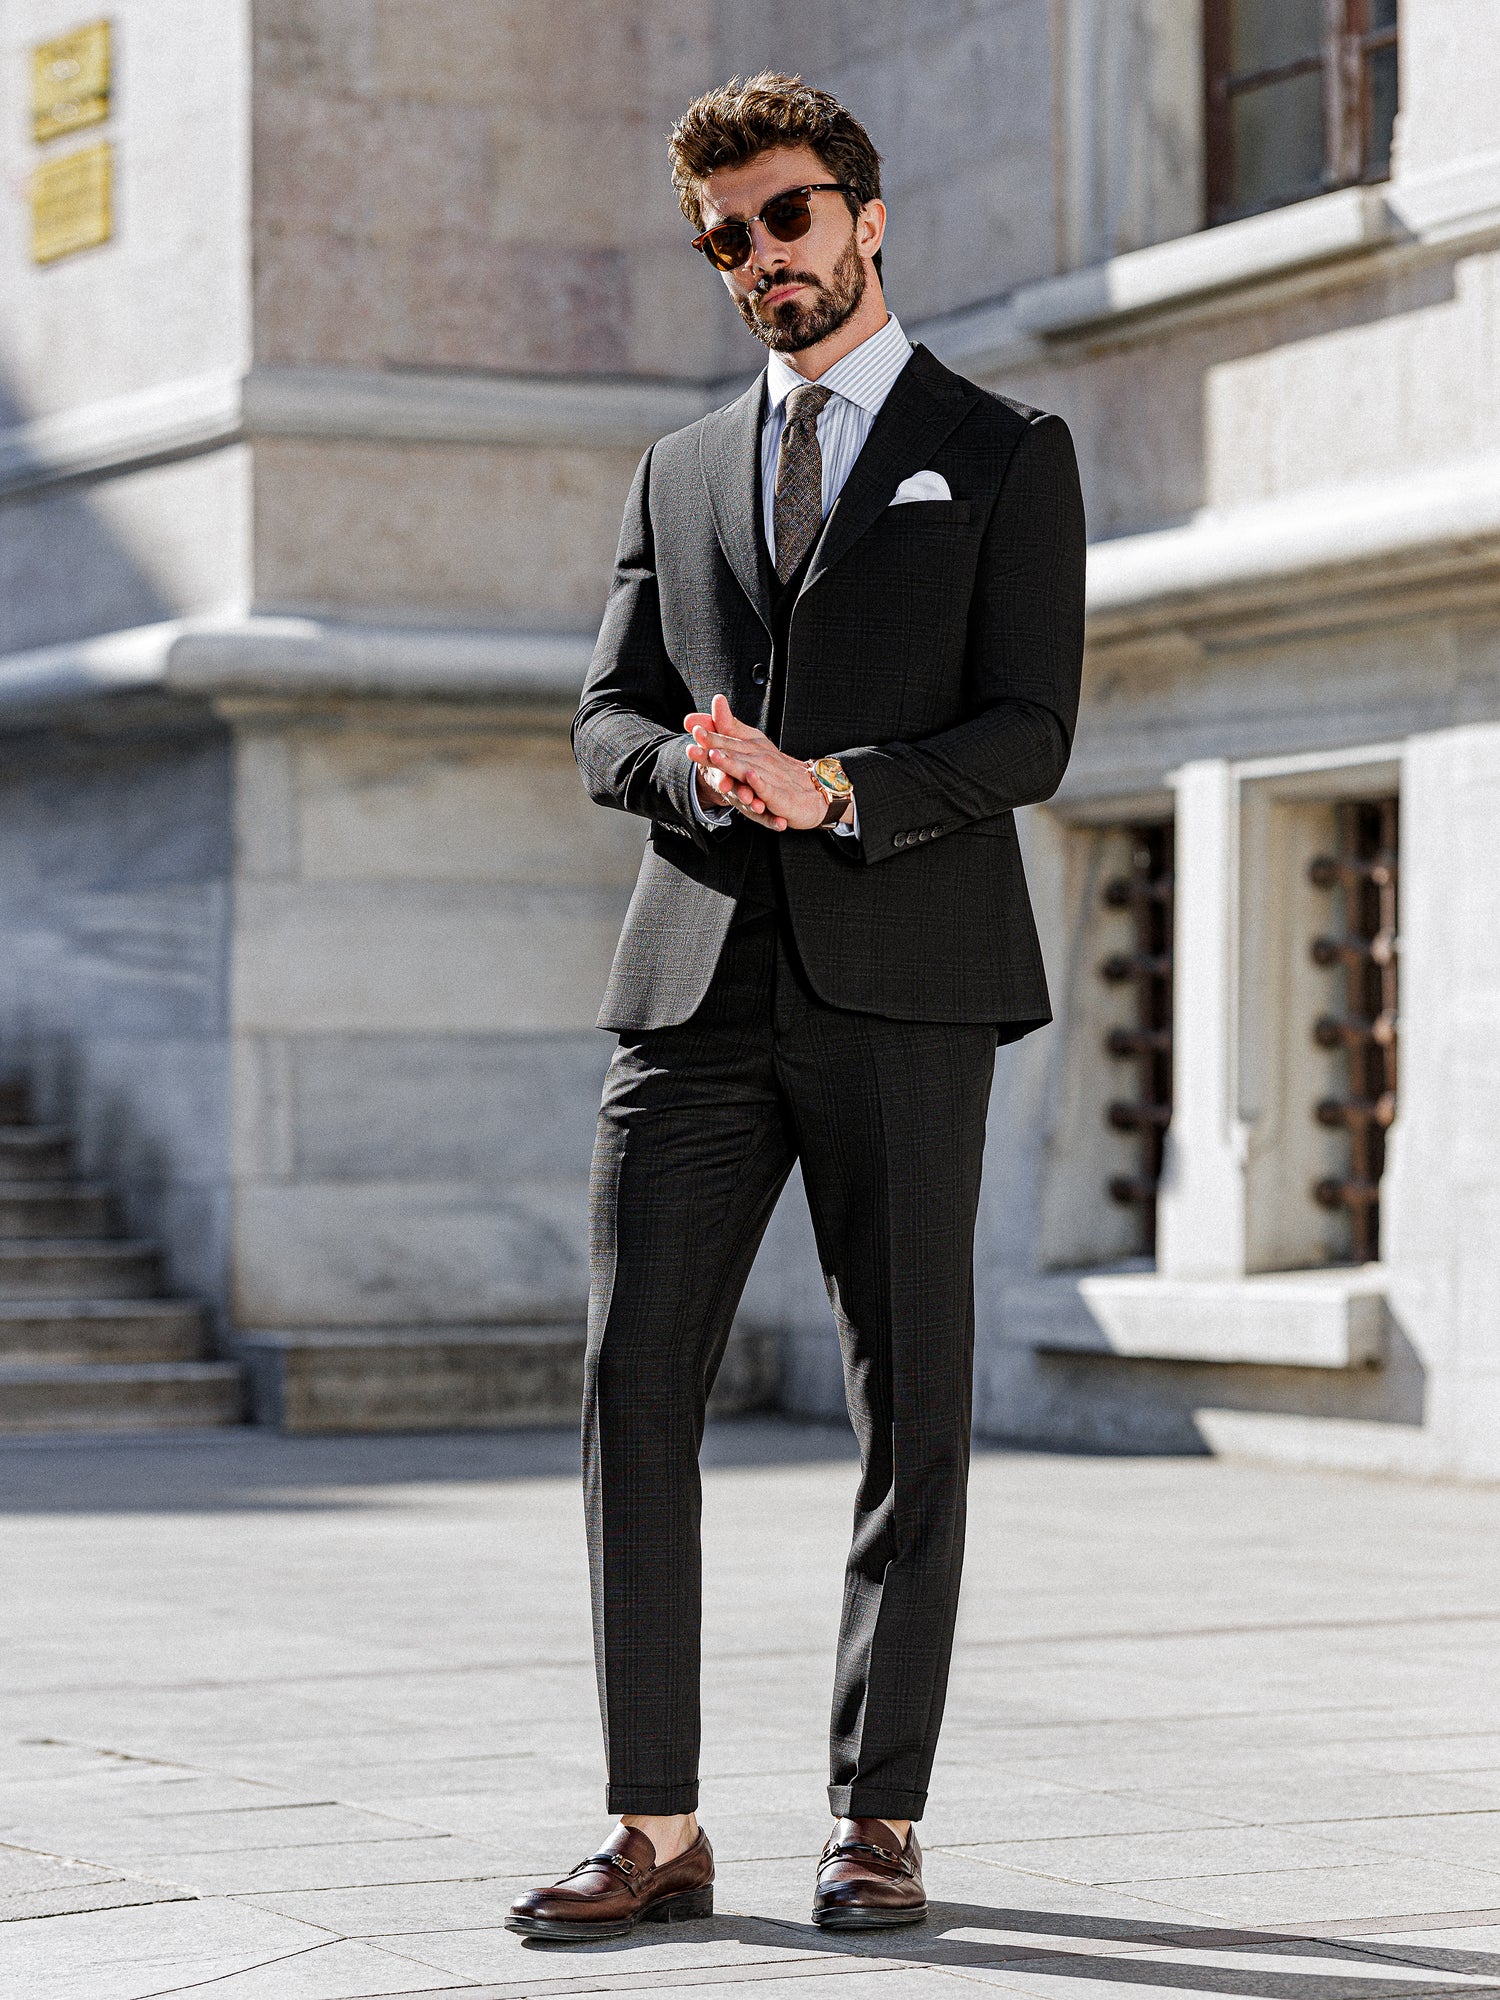 Black Plaid Slim-Fit Suit 3-Piece